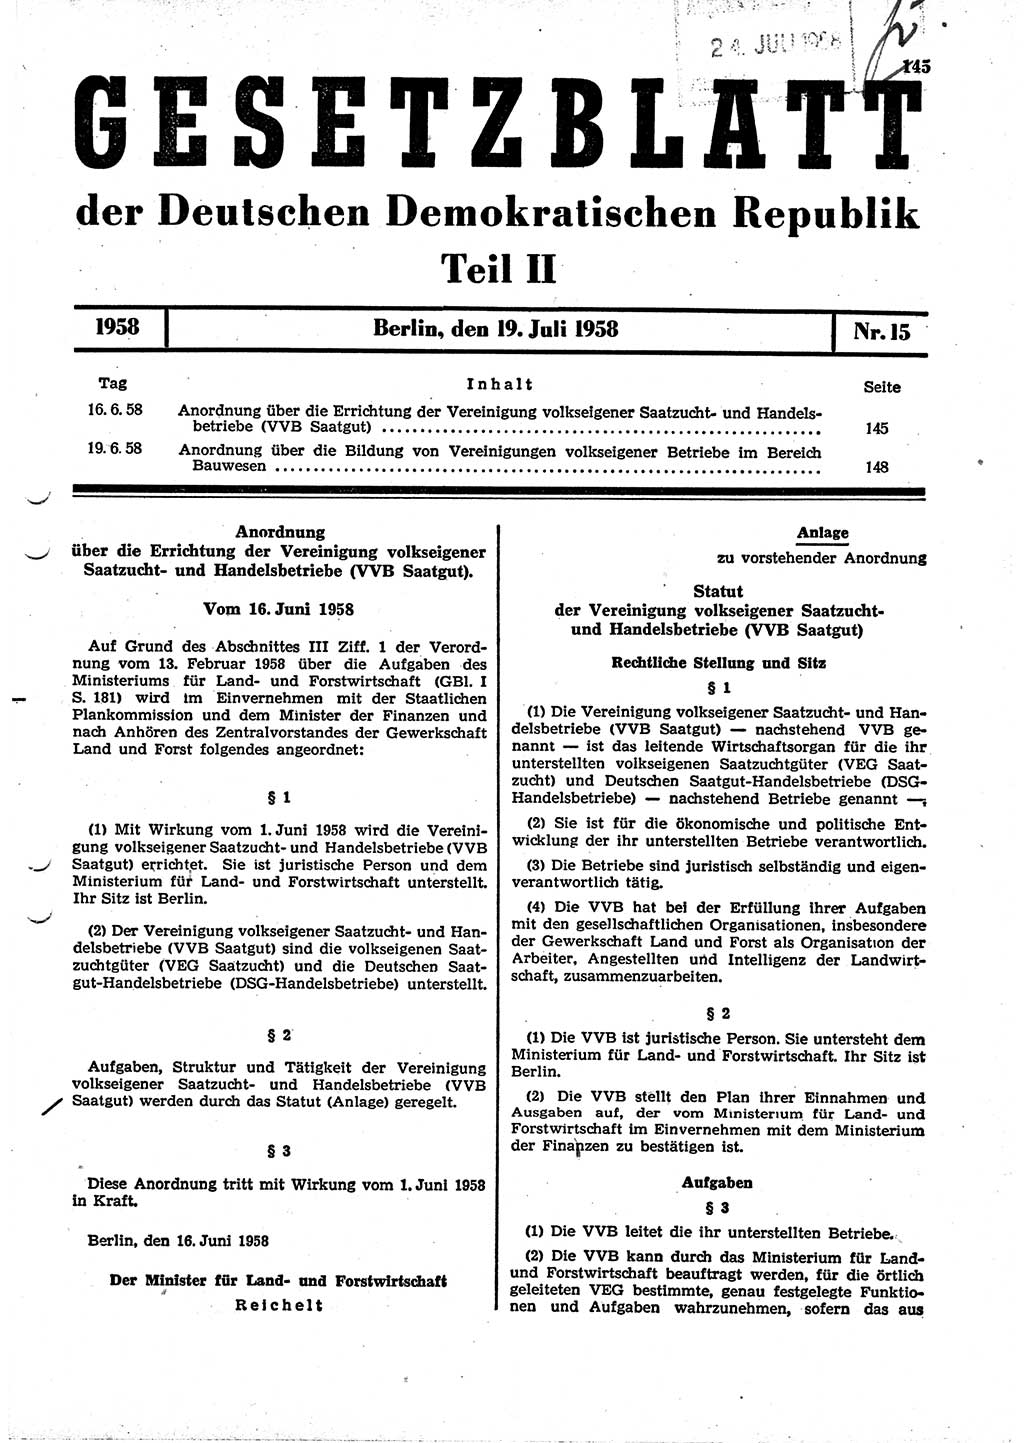 Gesetzblatt (GBl.) der Deutschen Demokratischen Republik (DDR) Teil ⅠⅠ 1958, Seite 145 (GBl. DDR ⅠⅠ 1958, S. 145)